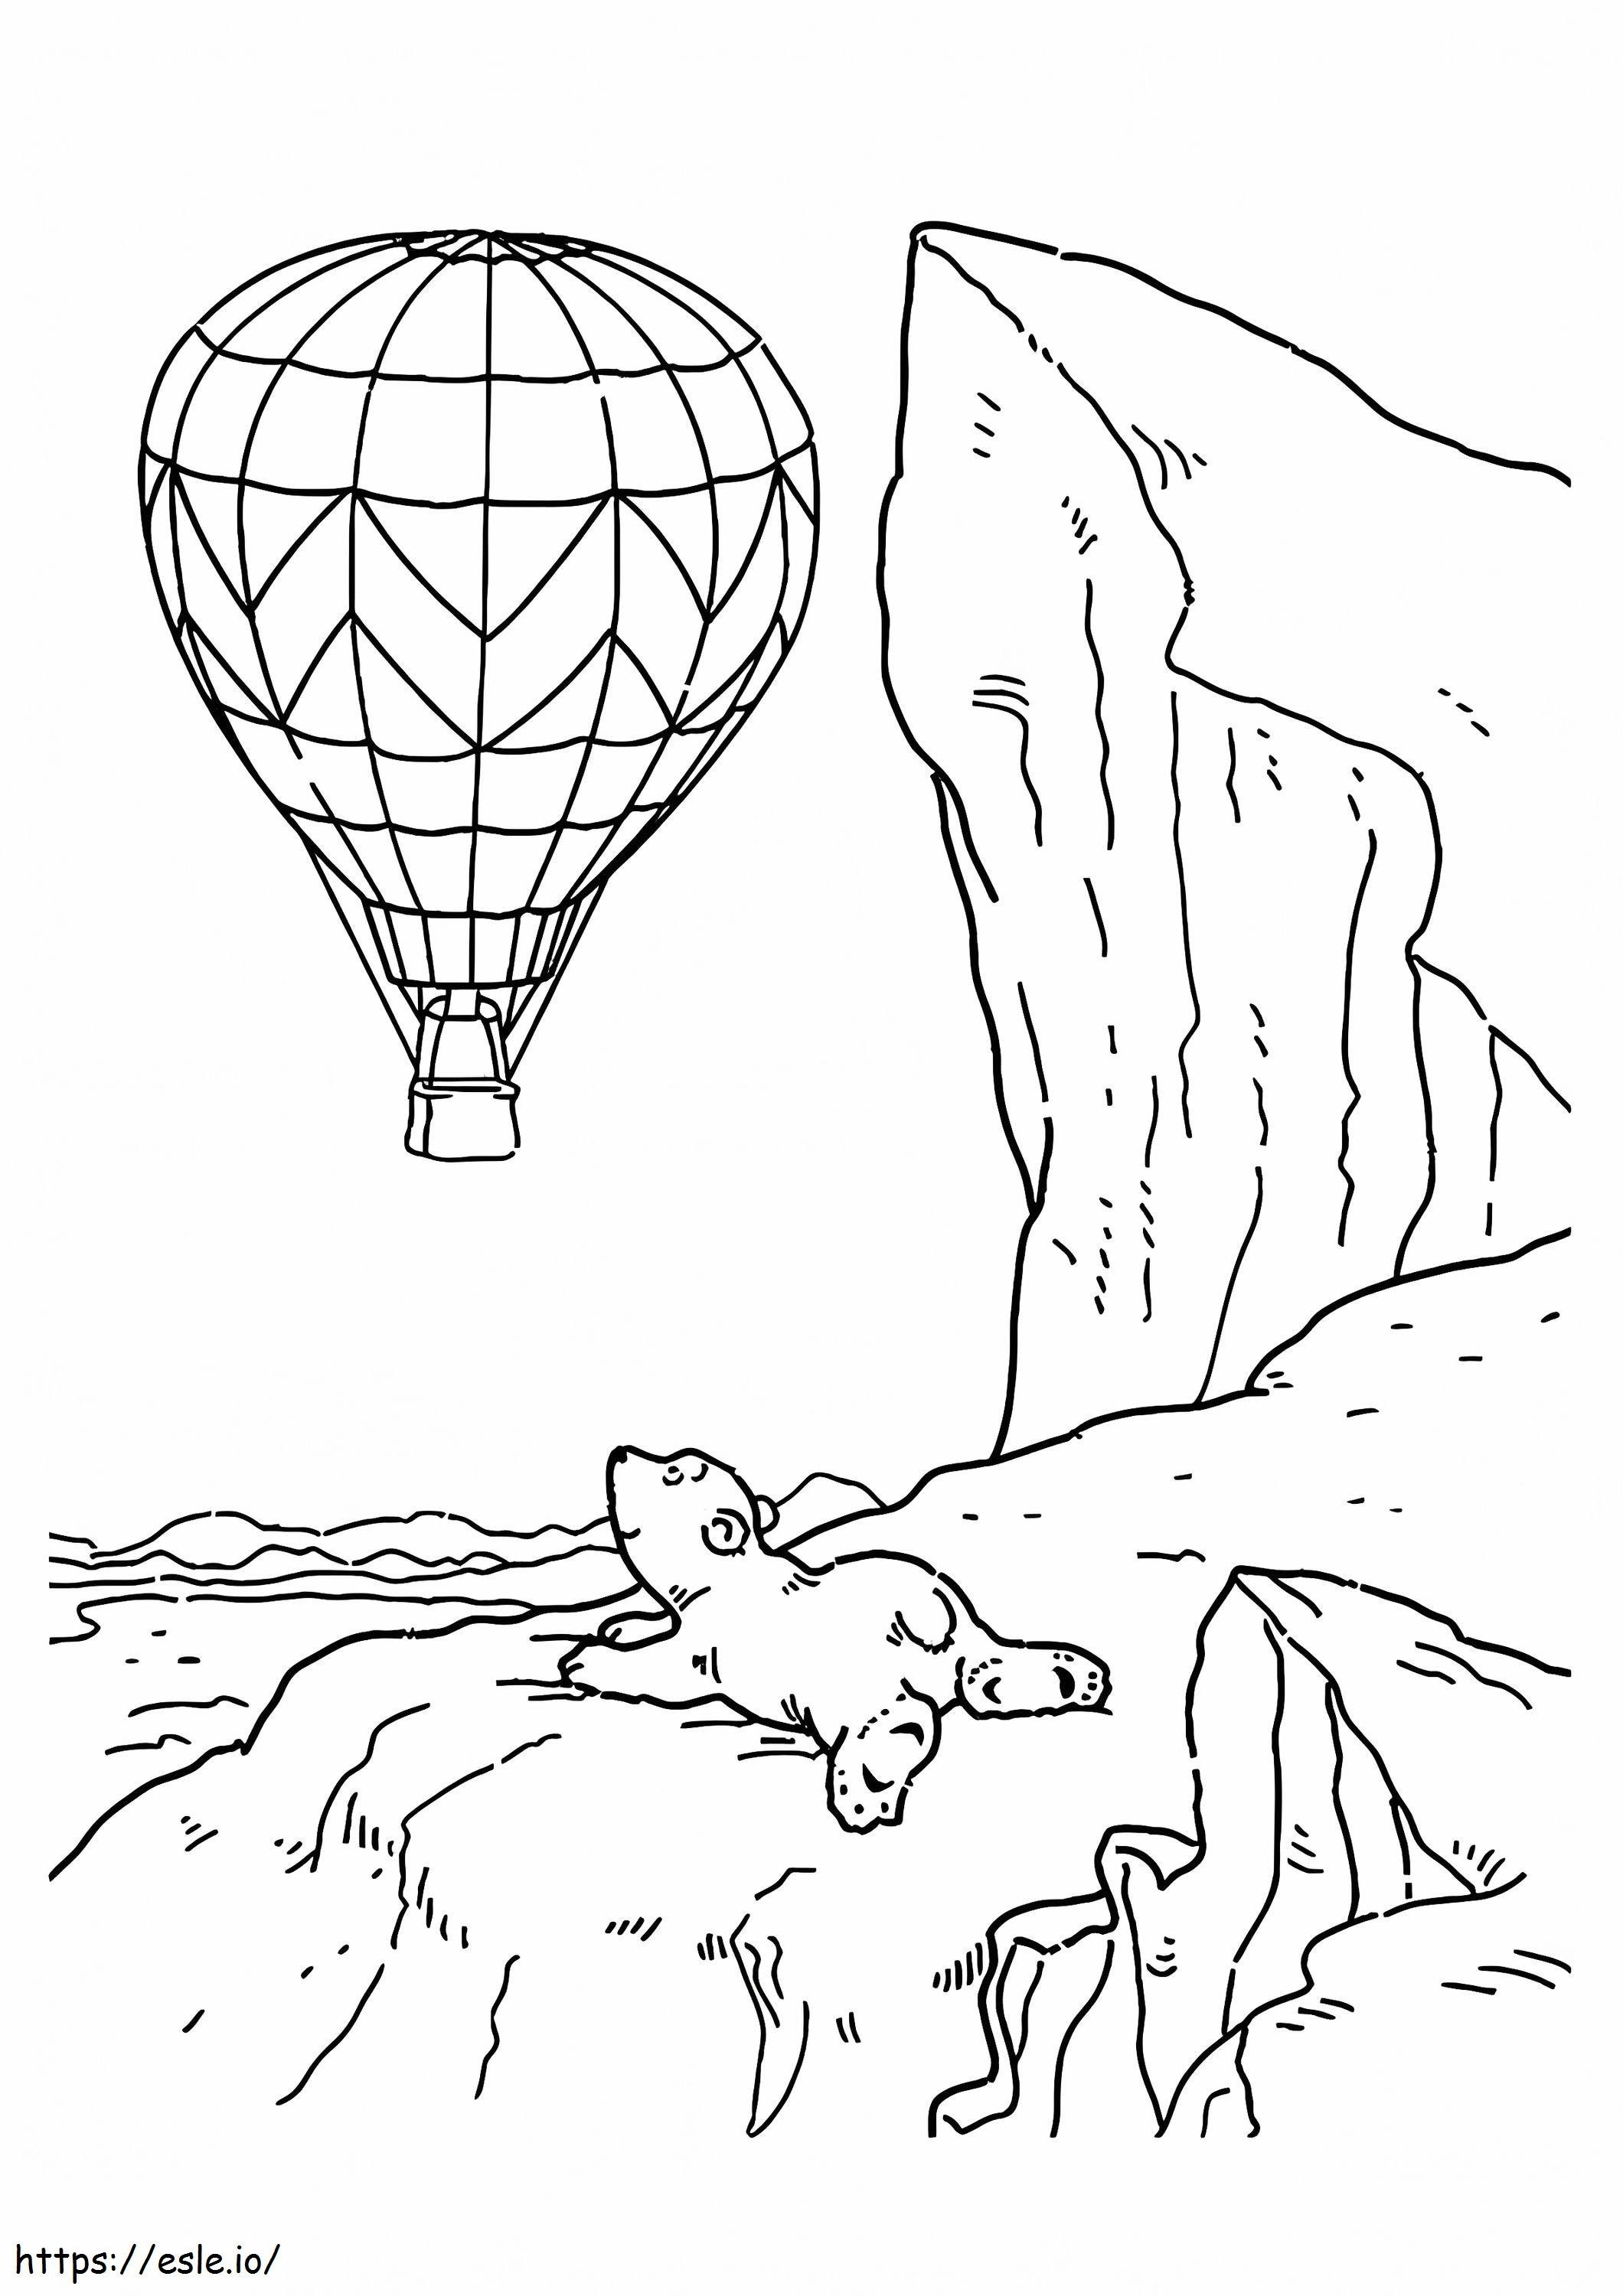 1526976924 Niedźwiedź polarny oglądający balon na ogrzane powietrze A4 kolorowanka